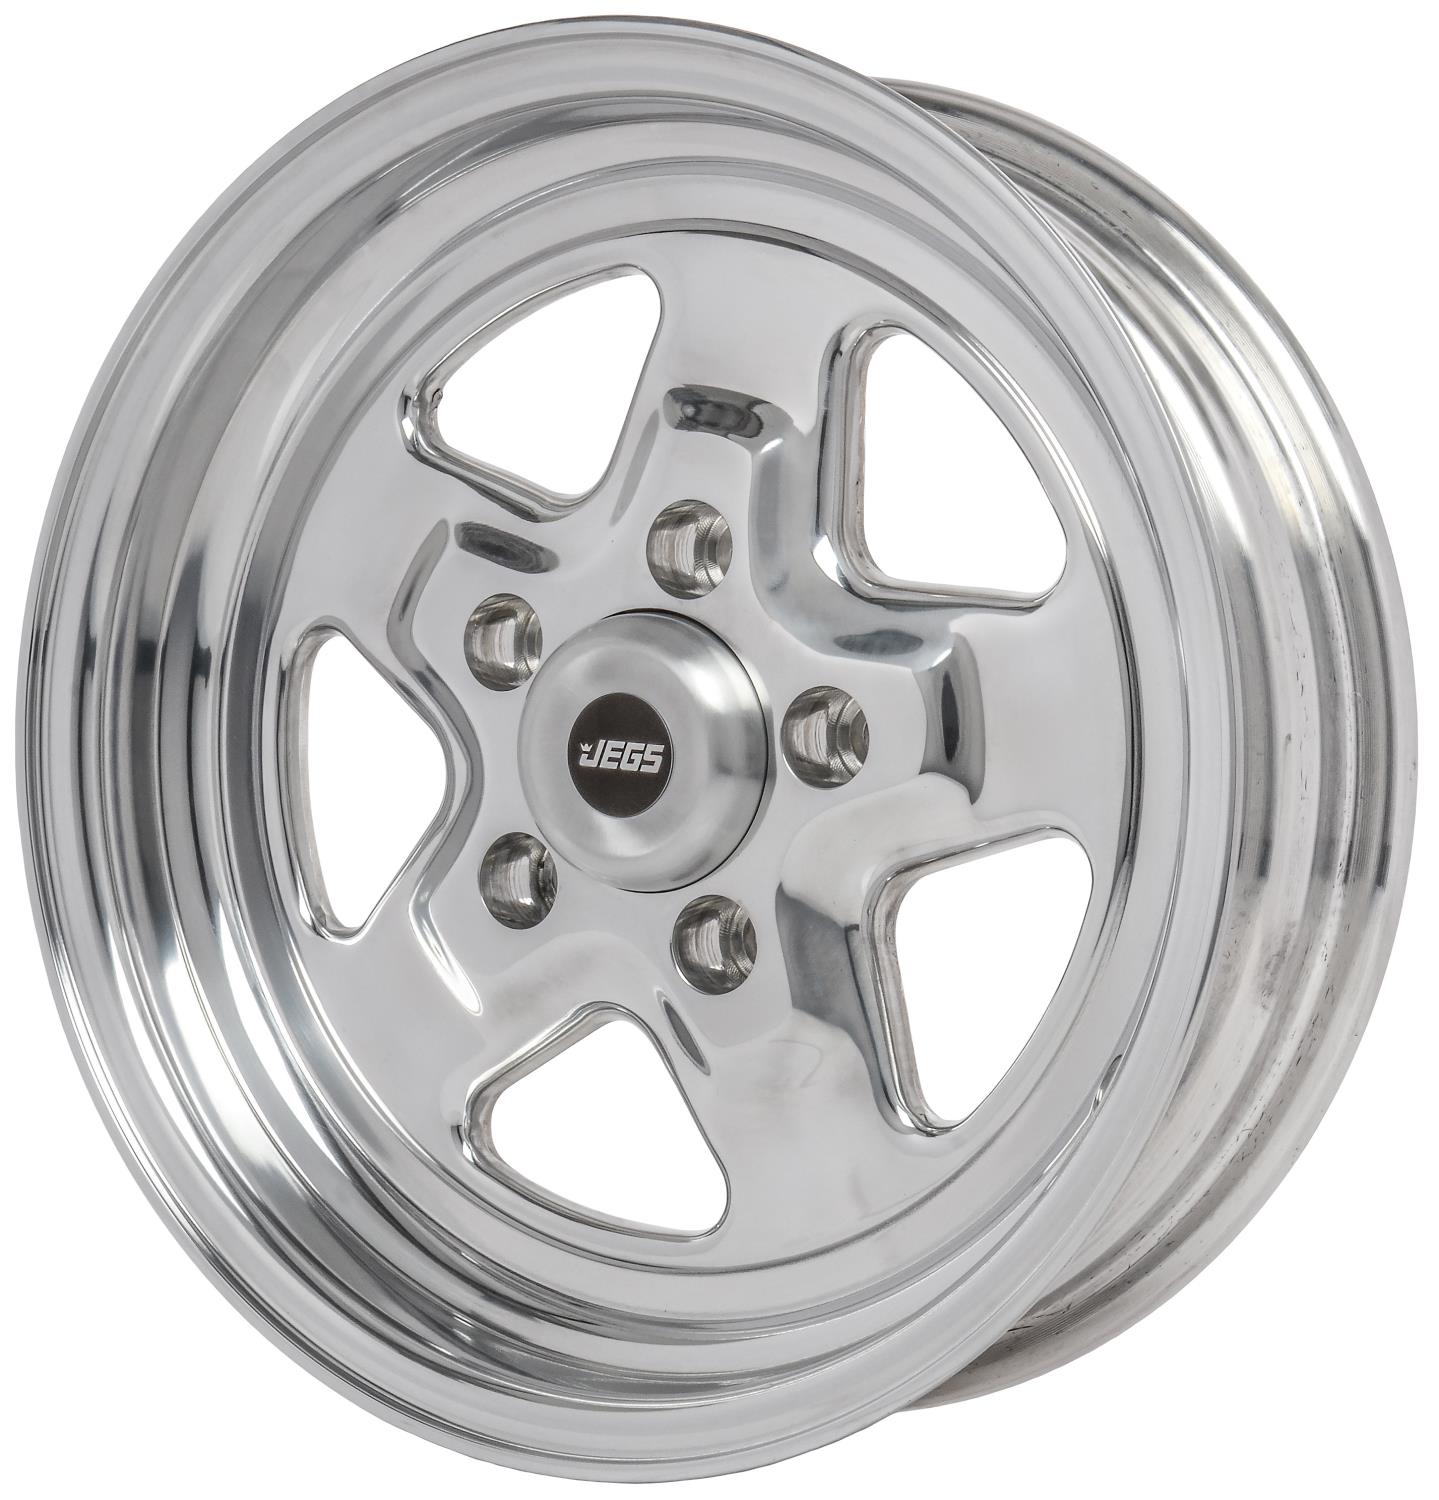 Sport Star 5-Spoke Wheel [Size: 15" x 4"]